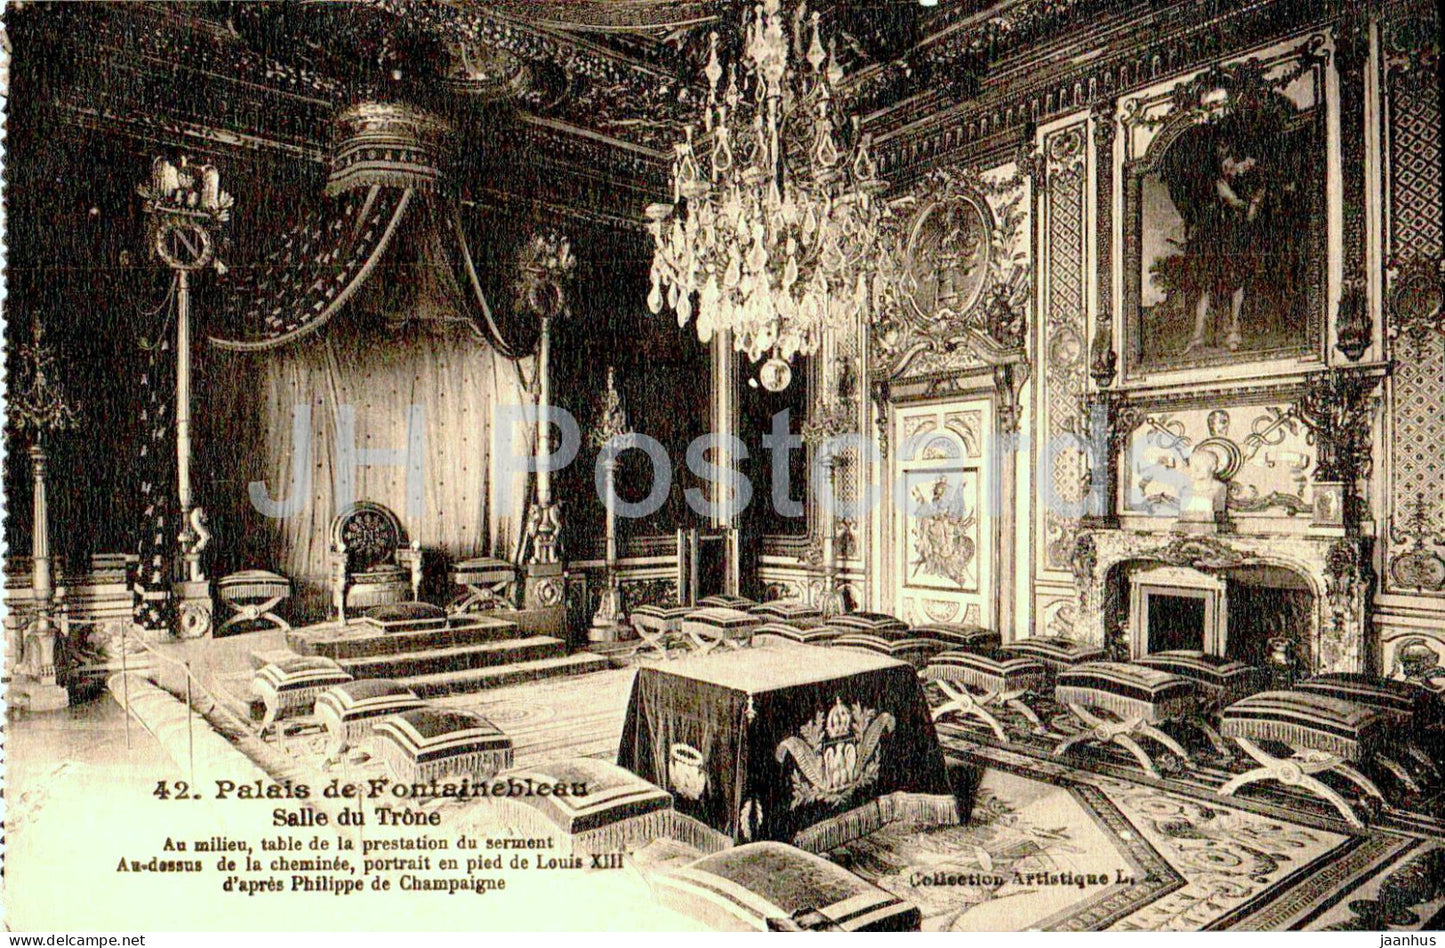 Palais de Fontainebleau - Salle du Trone - 42 - old postcard - France - unused - JH Postcards